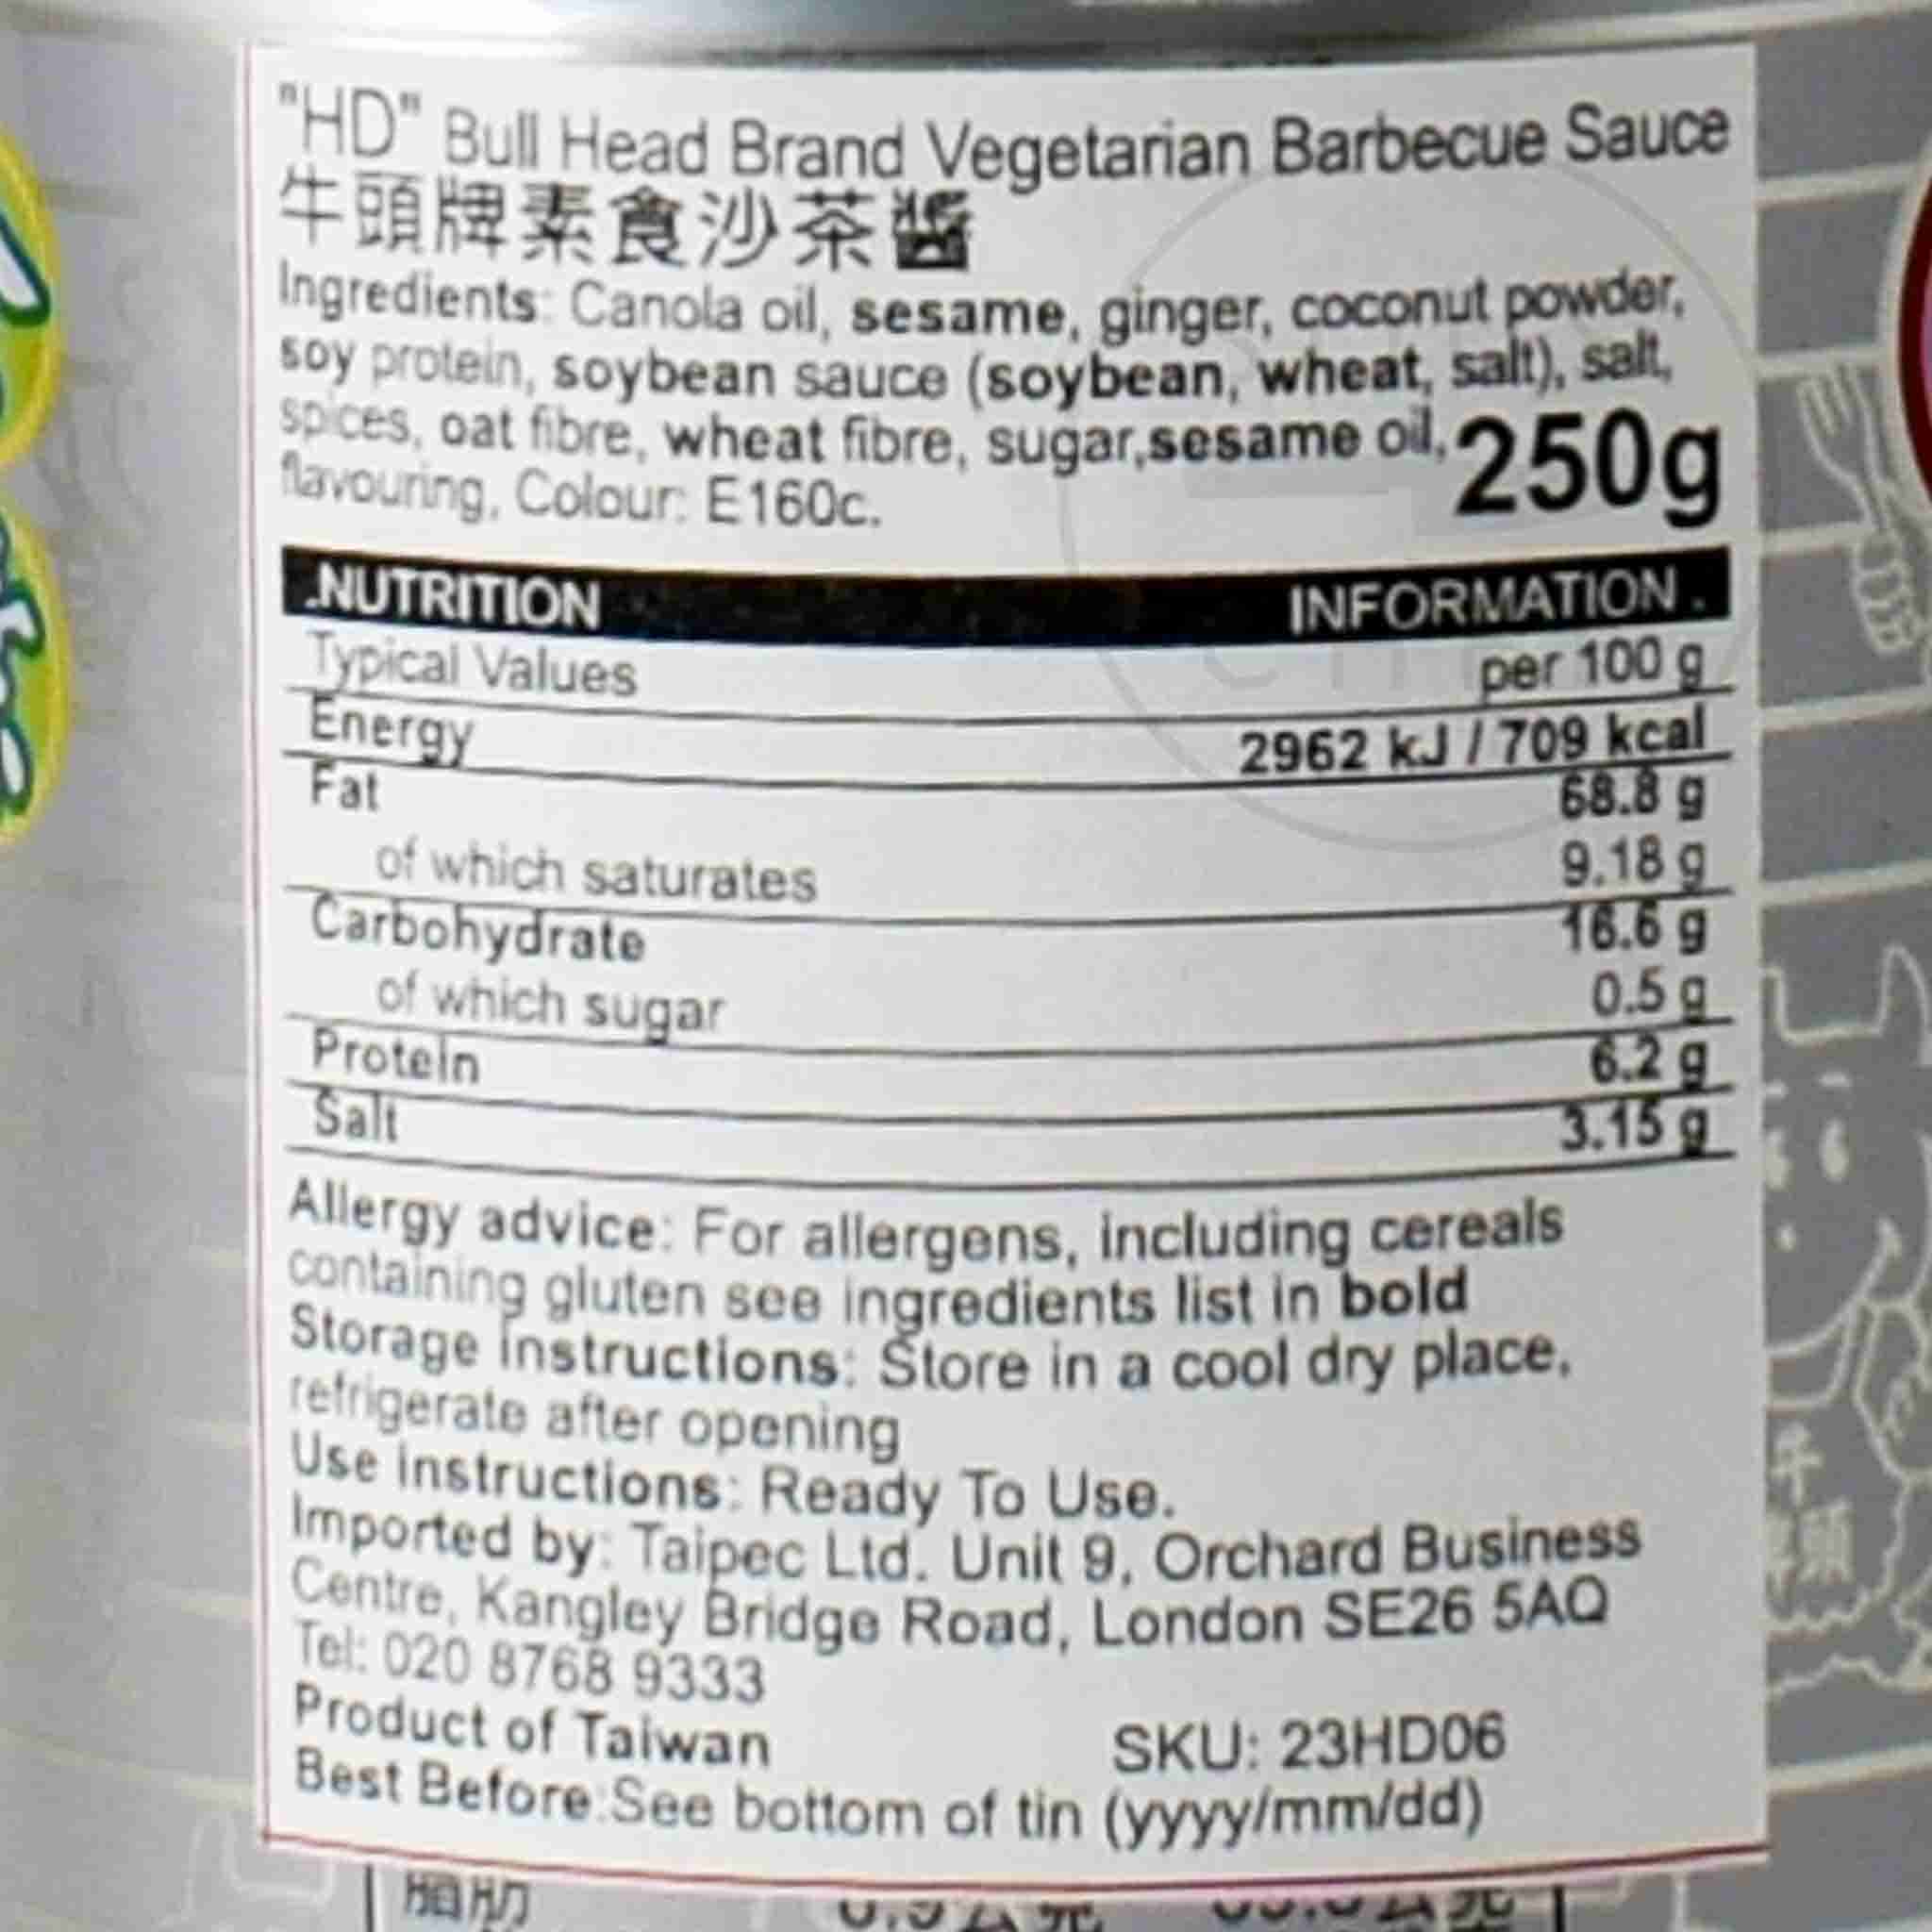 TA0026 Vegetarian BBQ Sauce 250g Ingredients